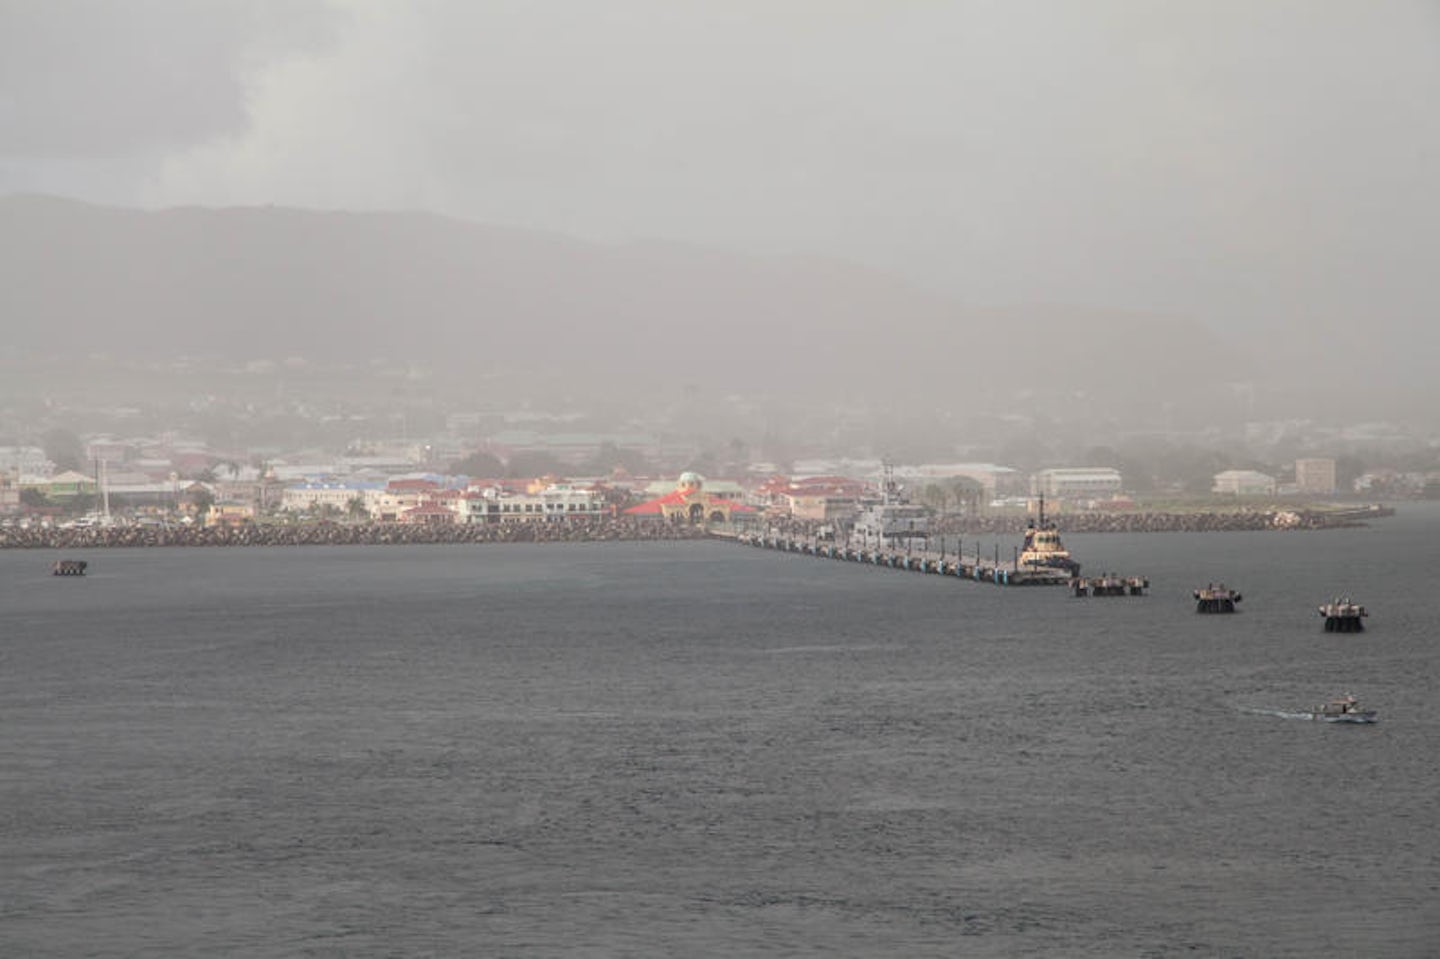 St. Kitts Cruise Port